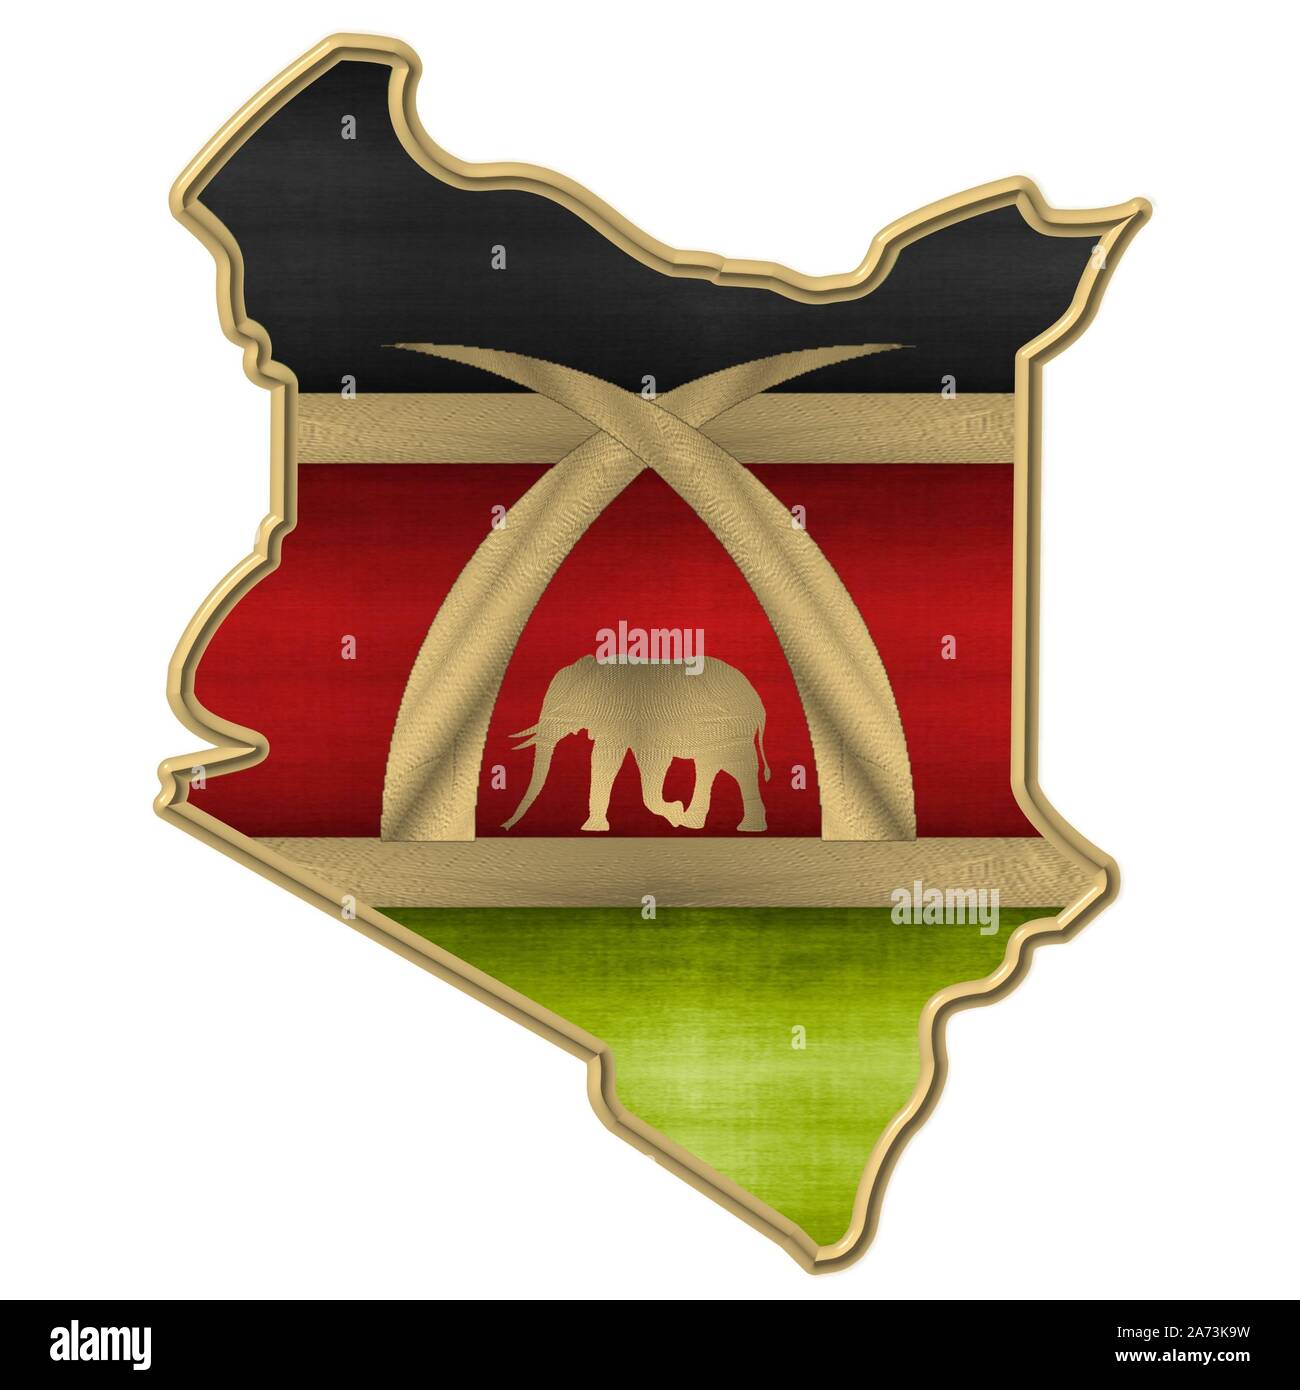 Die Farben und die Karte von Kenia Stockfoto